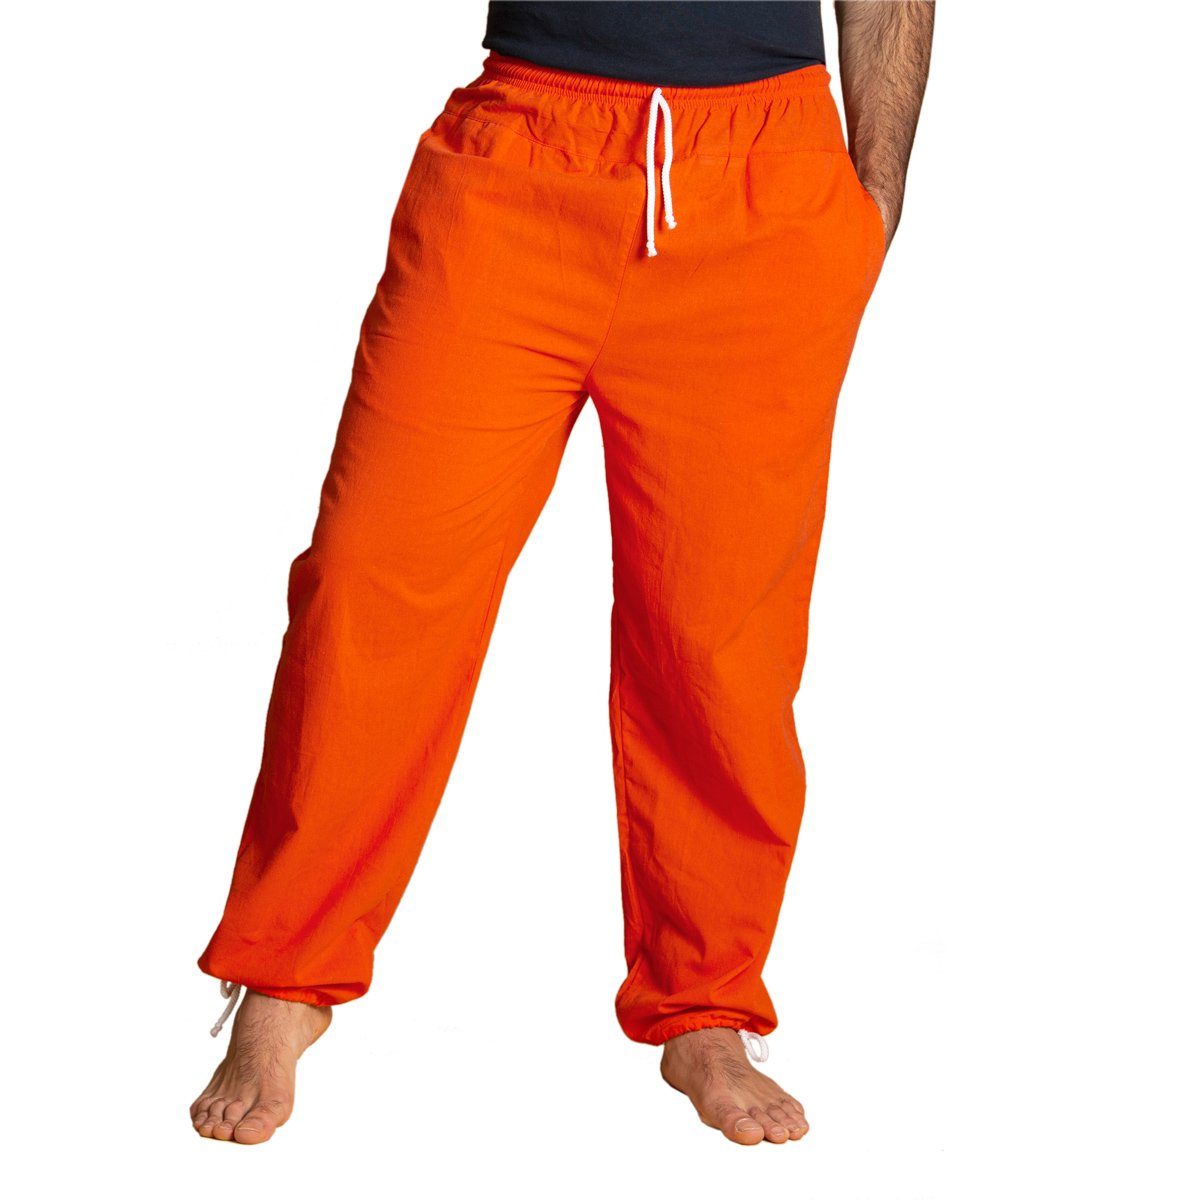 PANASIAM Wellnesshose E-Pants leichte Unisex Bundhose aus weicher Baumwolle für Damen und Herren Freizeithose mit Tunnelzug Relaxhose bequeme Sommerhose Orange